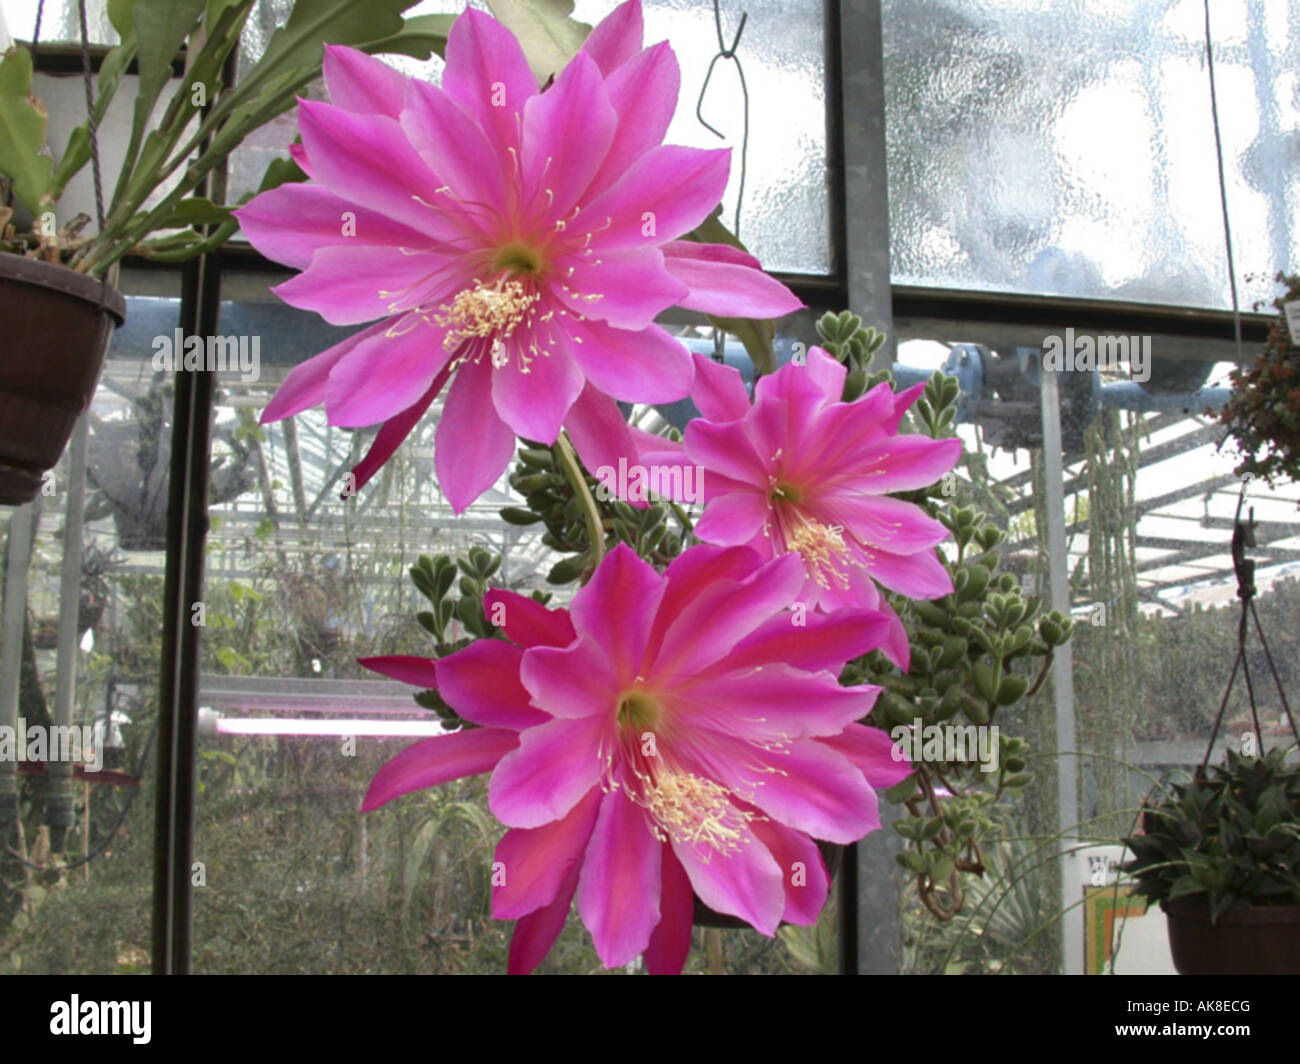 Epiphyllum hybrid (Epiphyllum 'Pegasus', Epiphyllum Pegasus, Epiphyllum-Hybride), flower Stock Photo